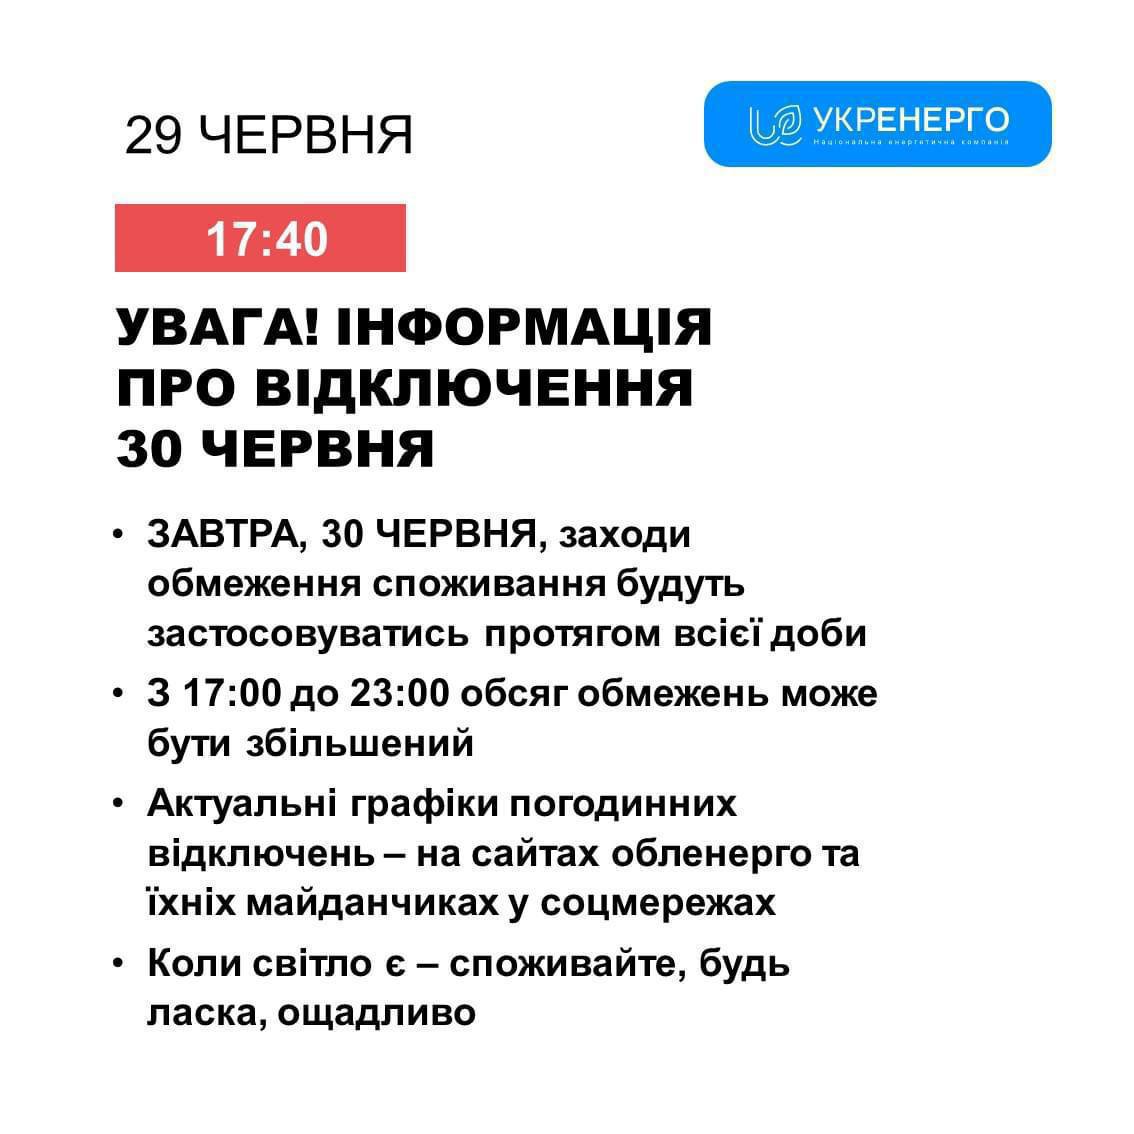 Графики отключений завтра будут использоваться на протяжении целых суток, сообщает Укрэнерго. С 17.00 до 23.00 ограничения могут быть увеличены.